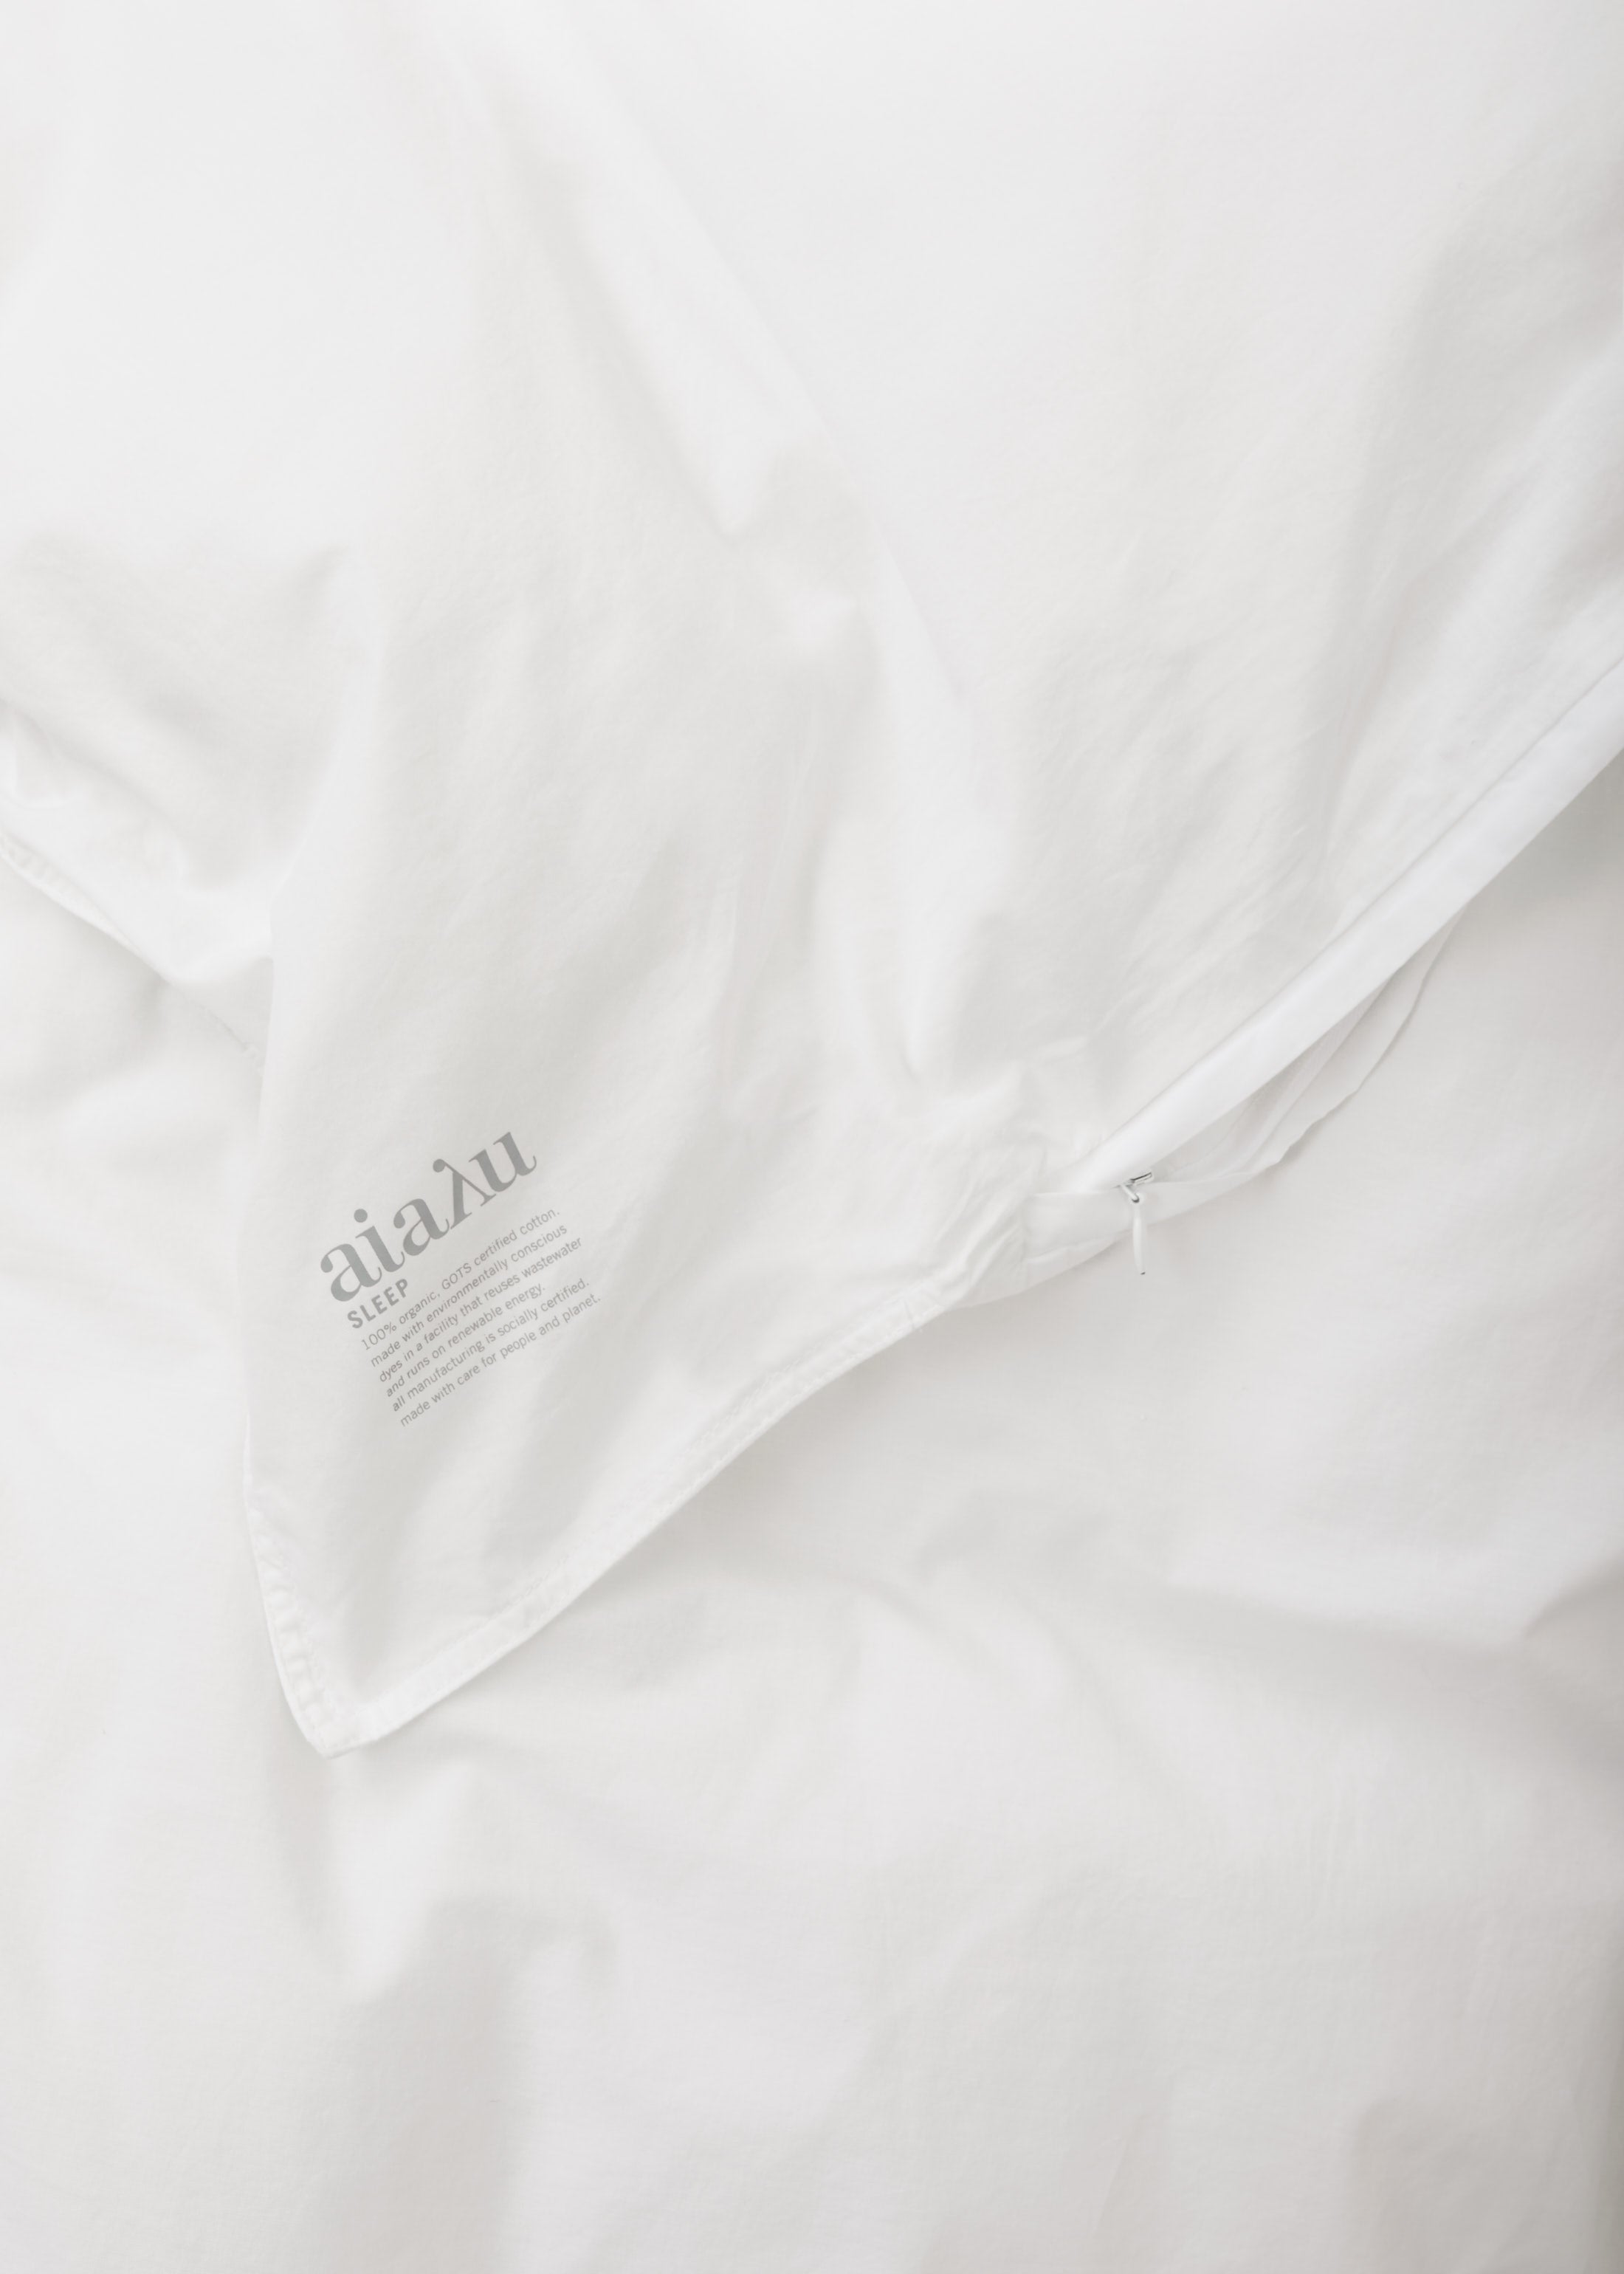 Junior duvet set 100x140 & pillow case - white | White